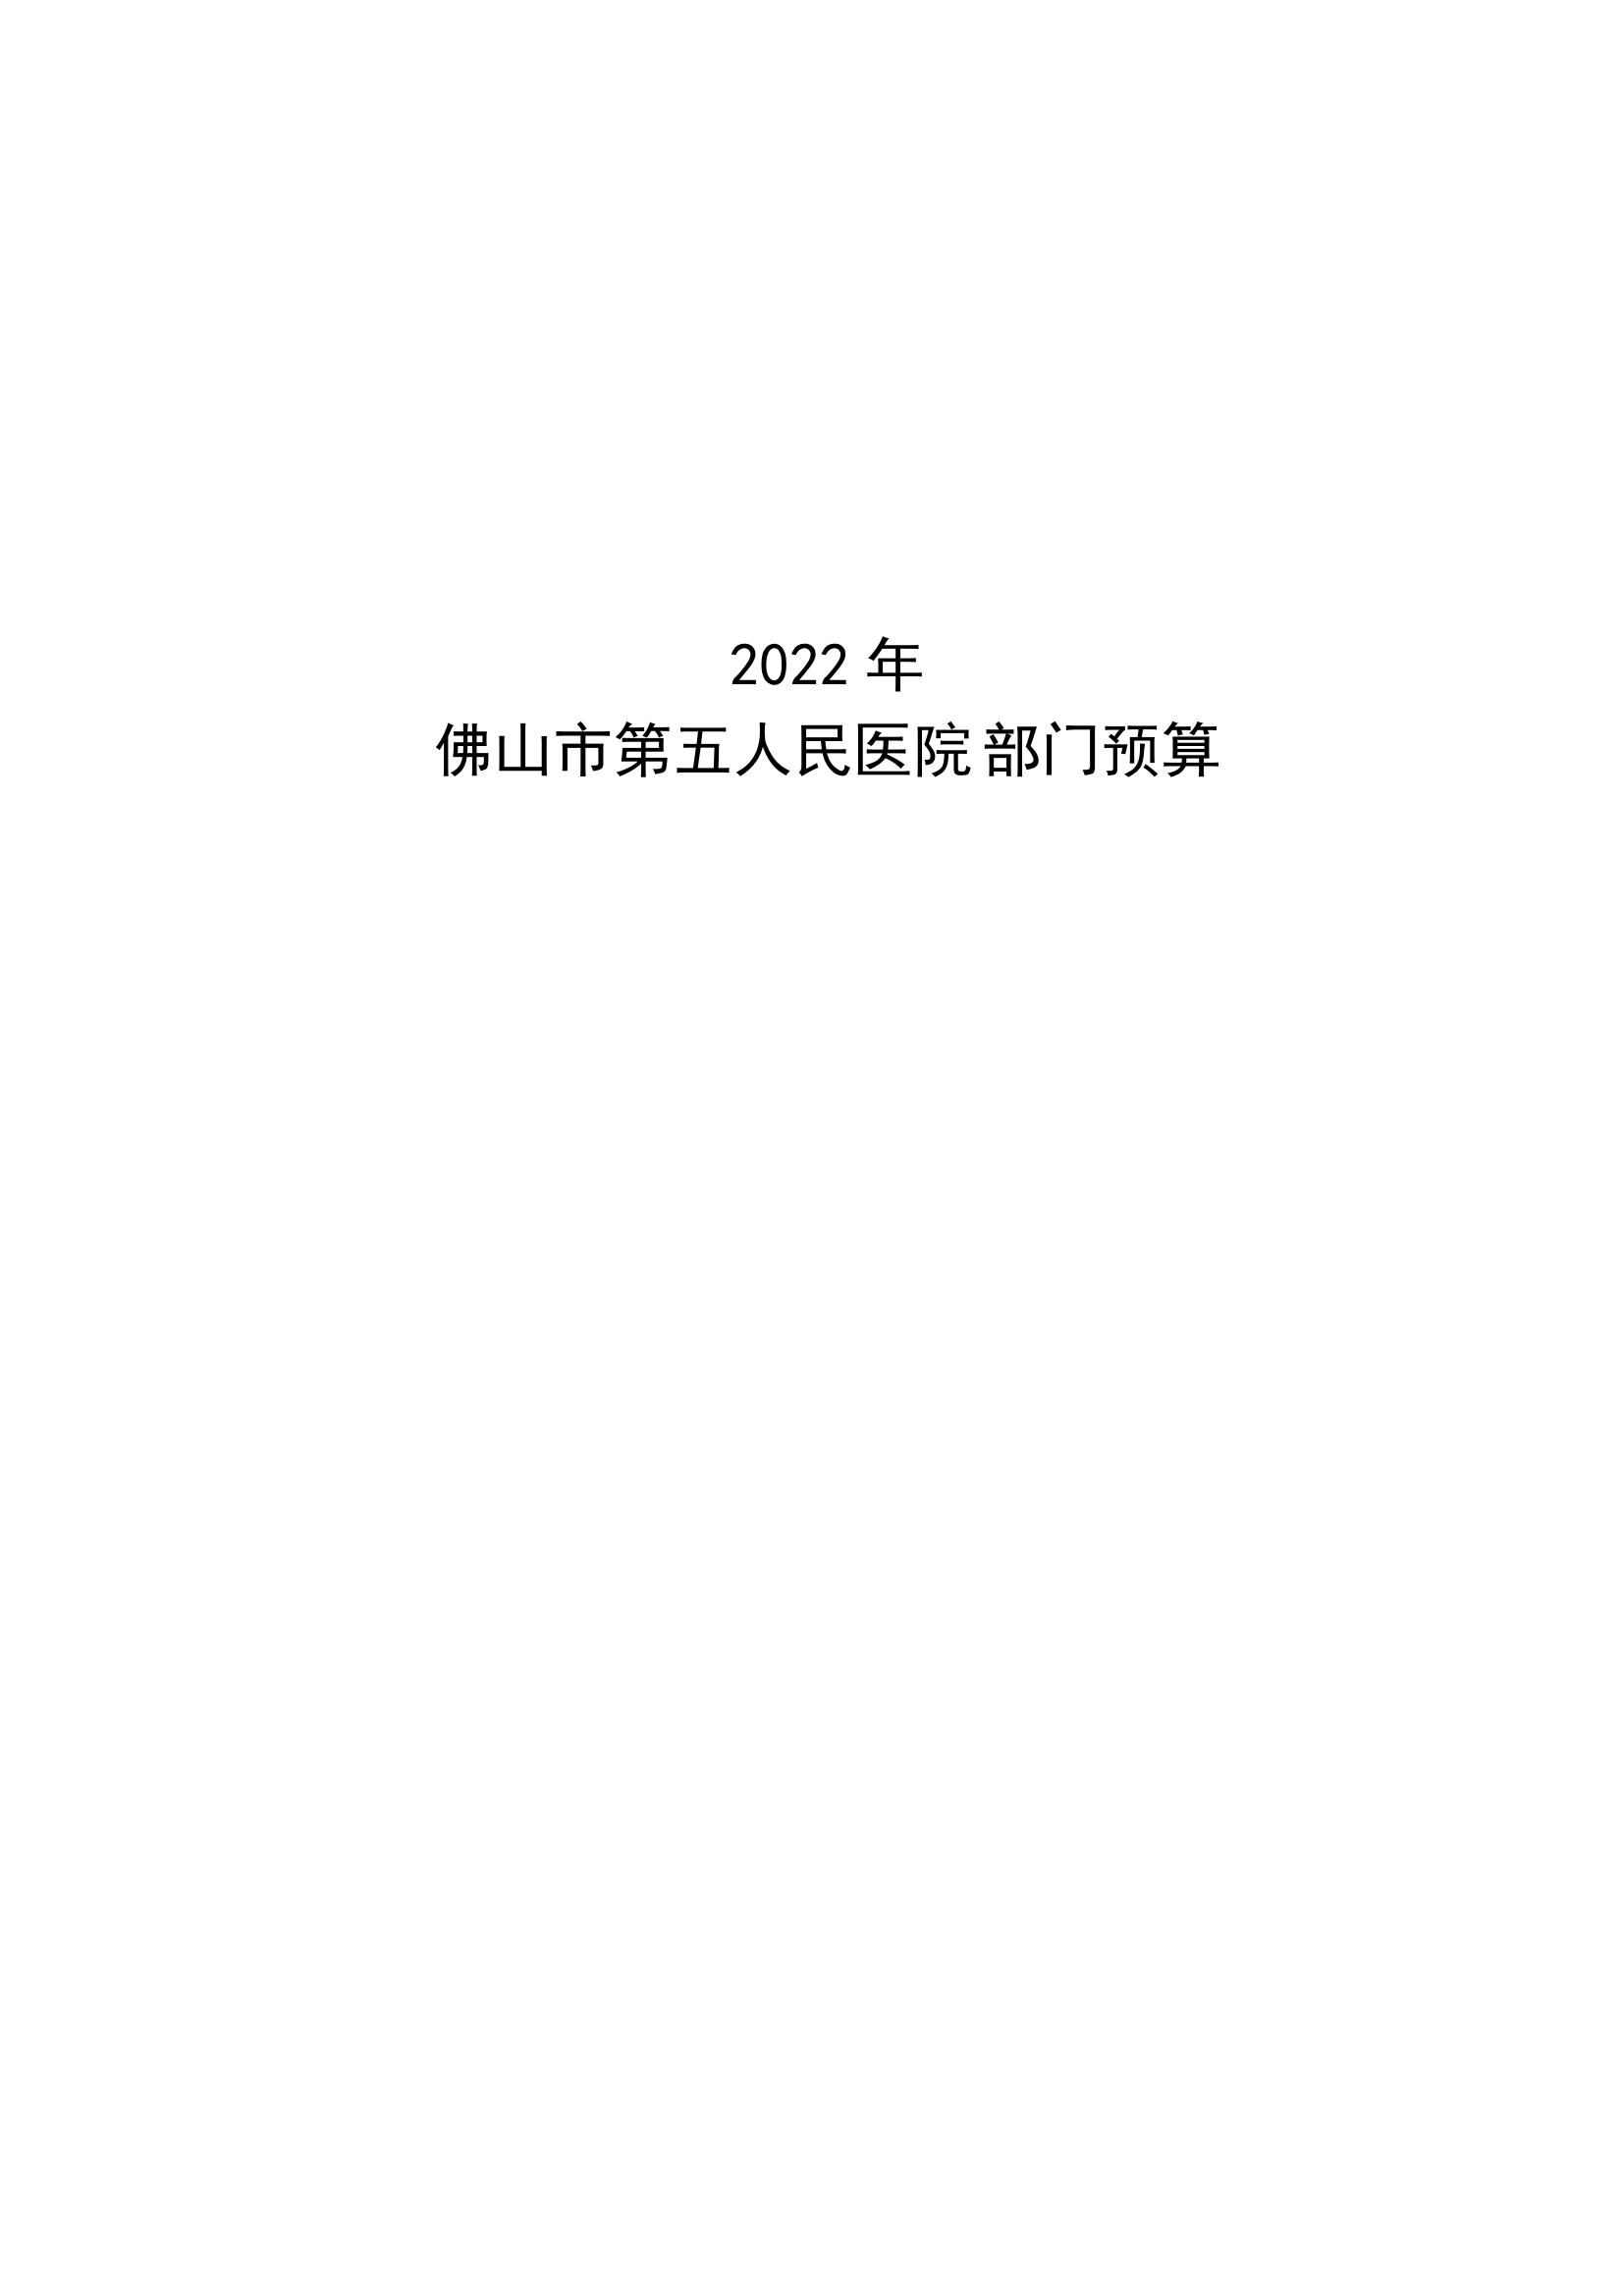 2022年佛山市第五人民医院部门预算_00.jpg